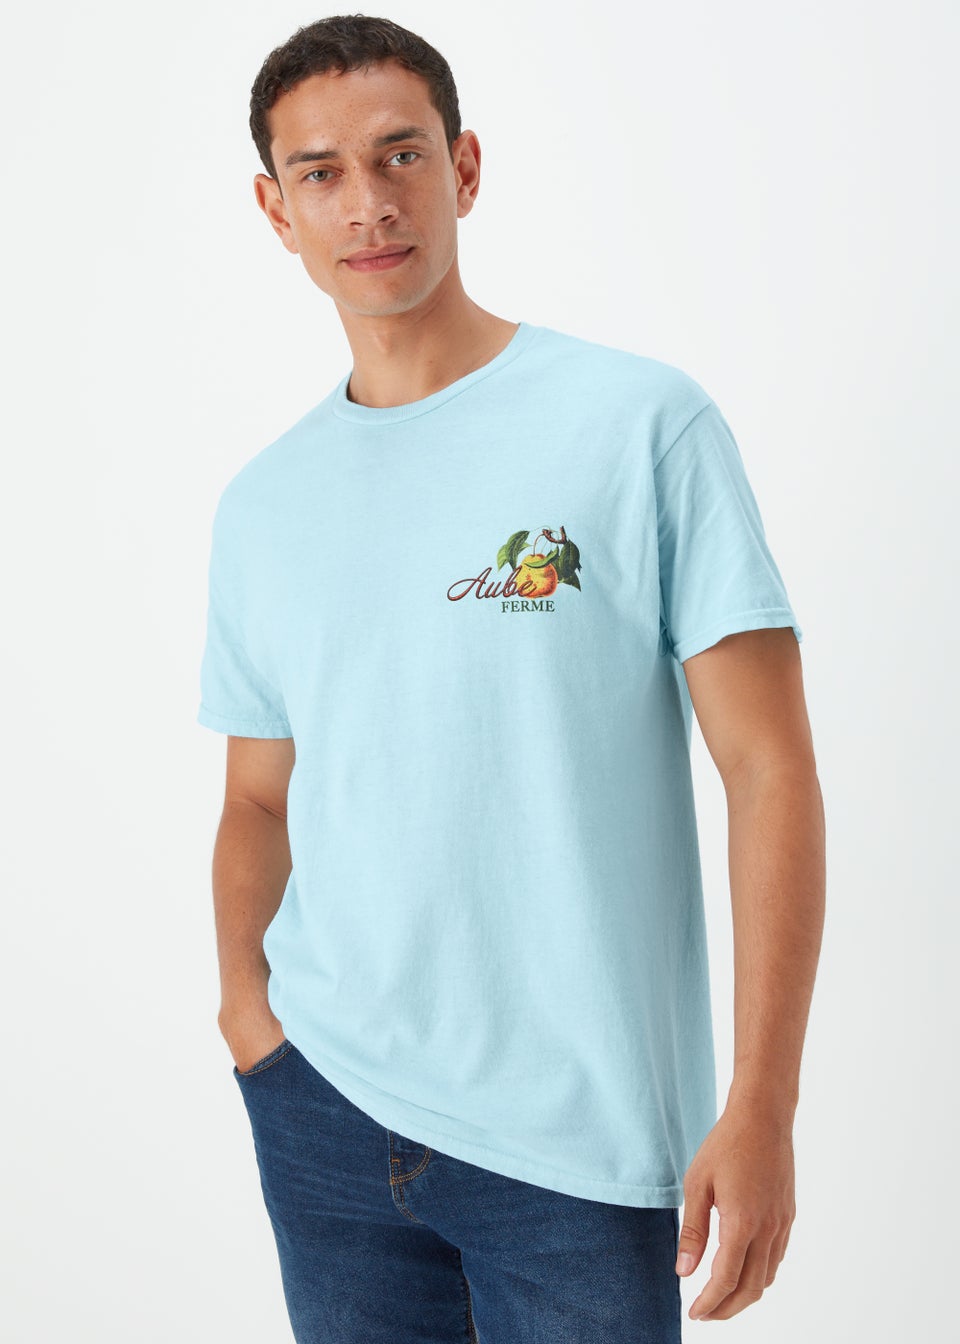 Aqua Pears T-Shirt